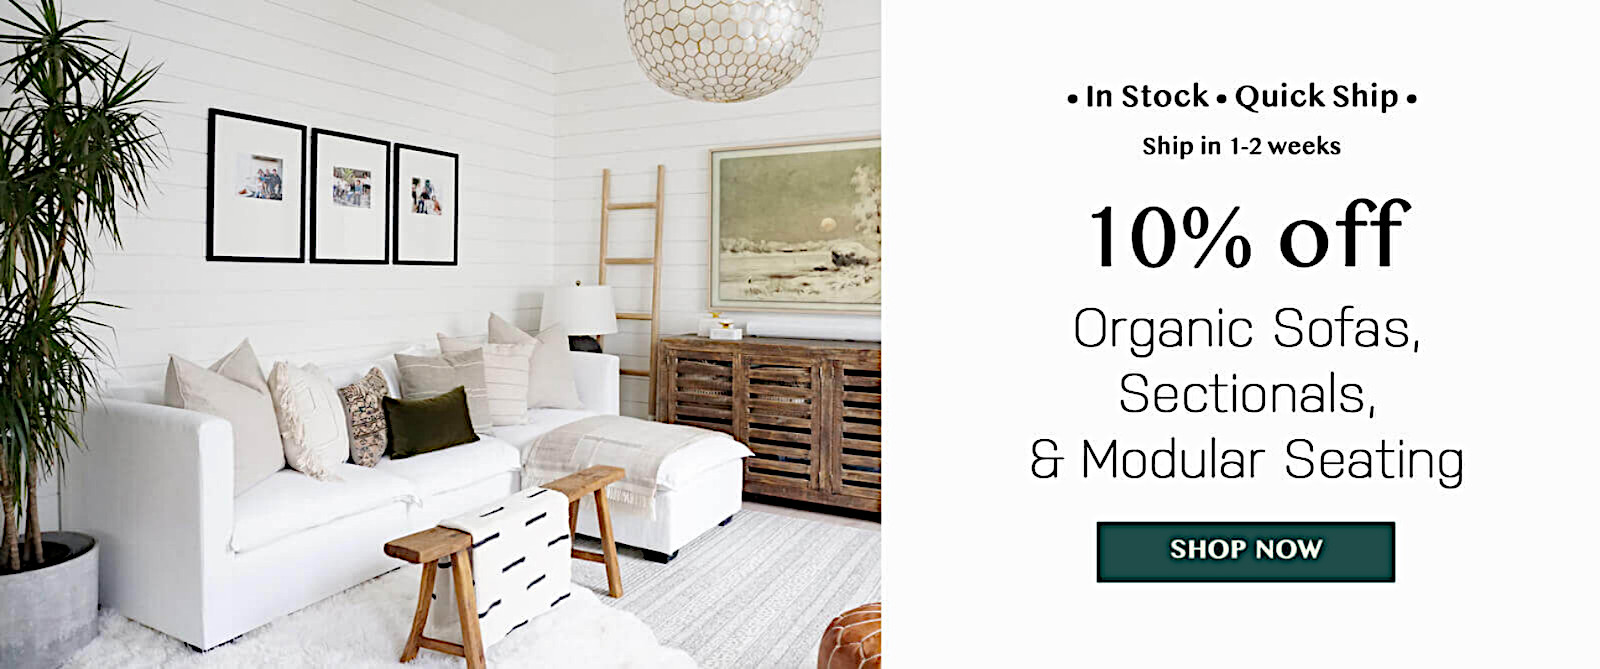 Bargain Price organic sofas sectionals modular seating